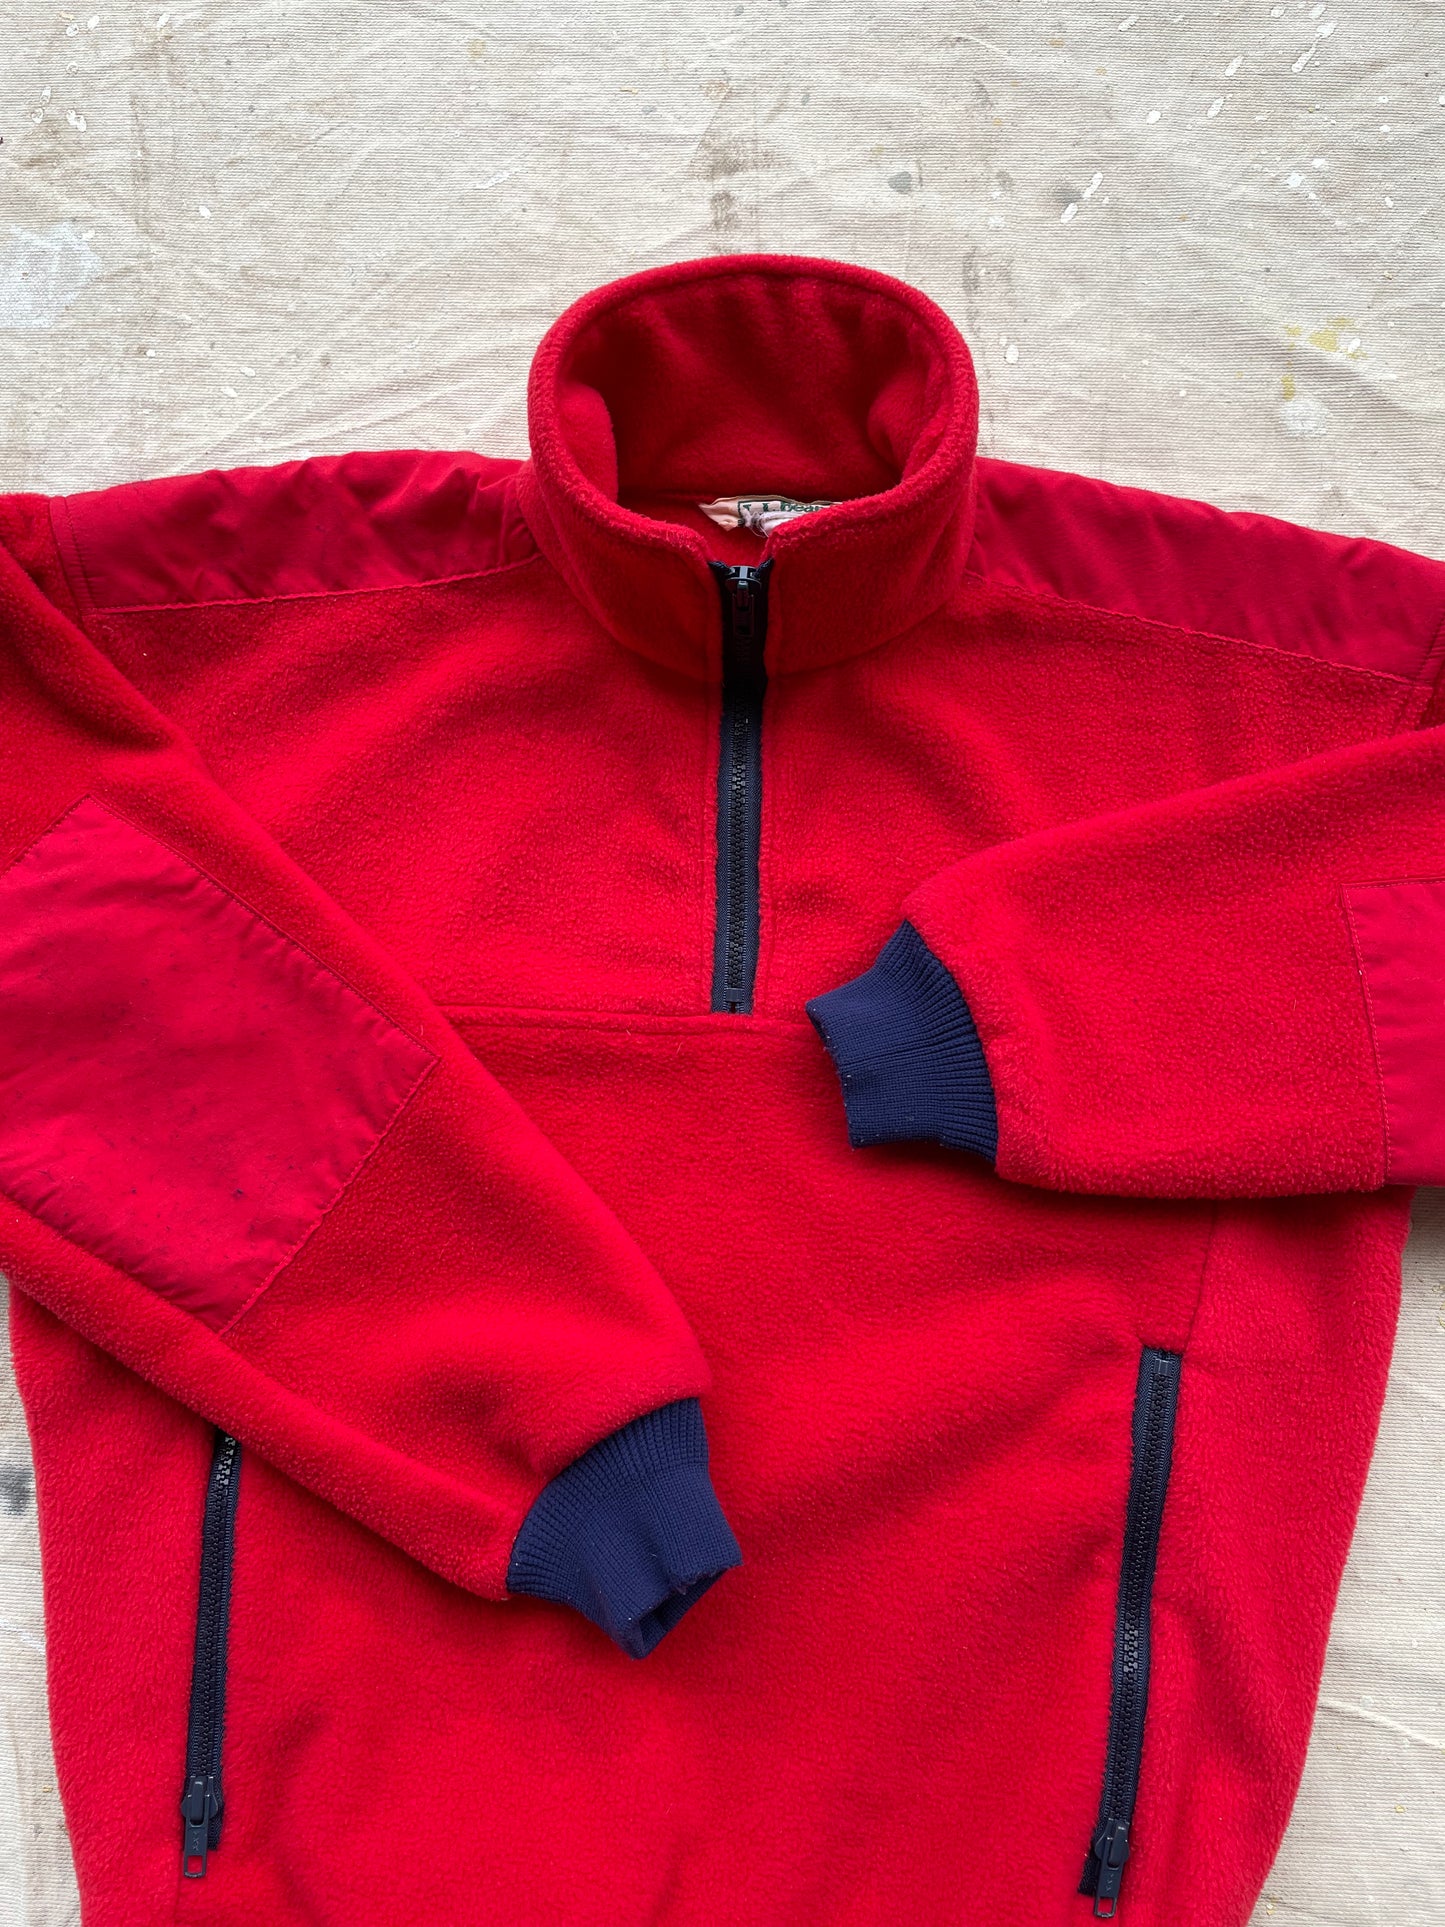 L.L. Bean Ski Style Fleece Jacket—[M]